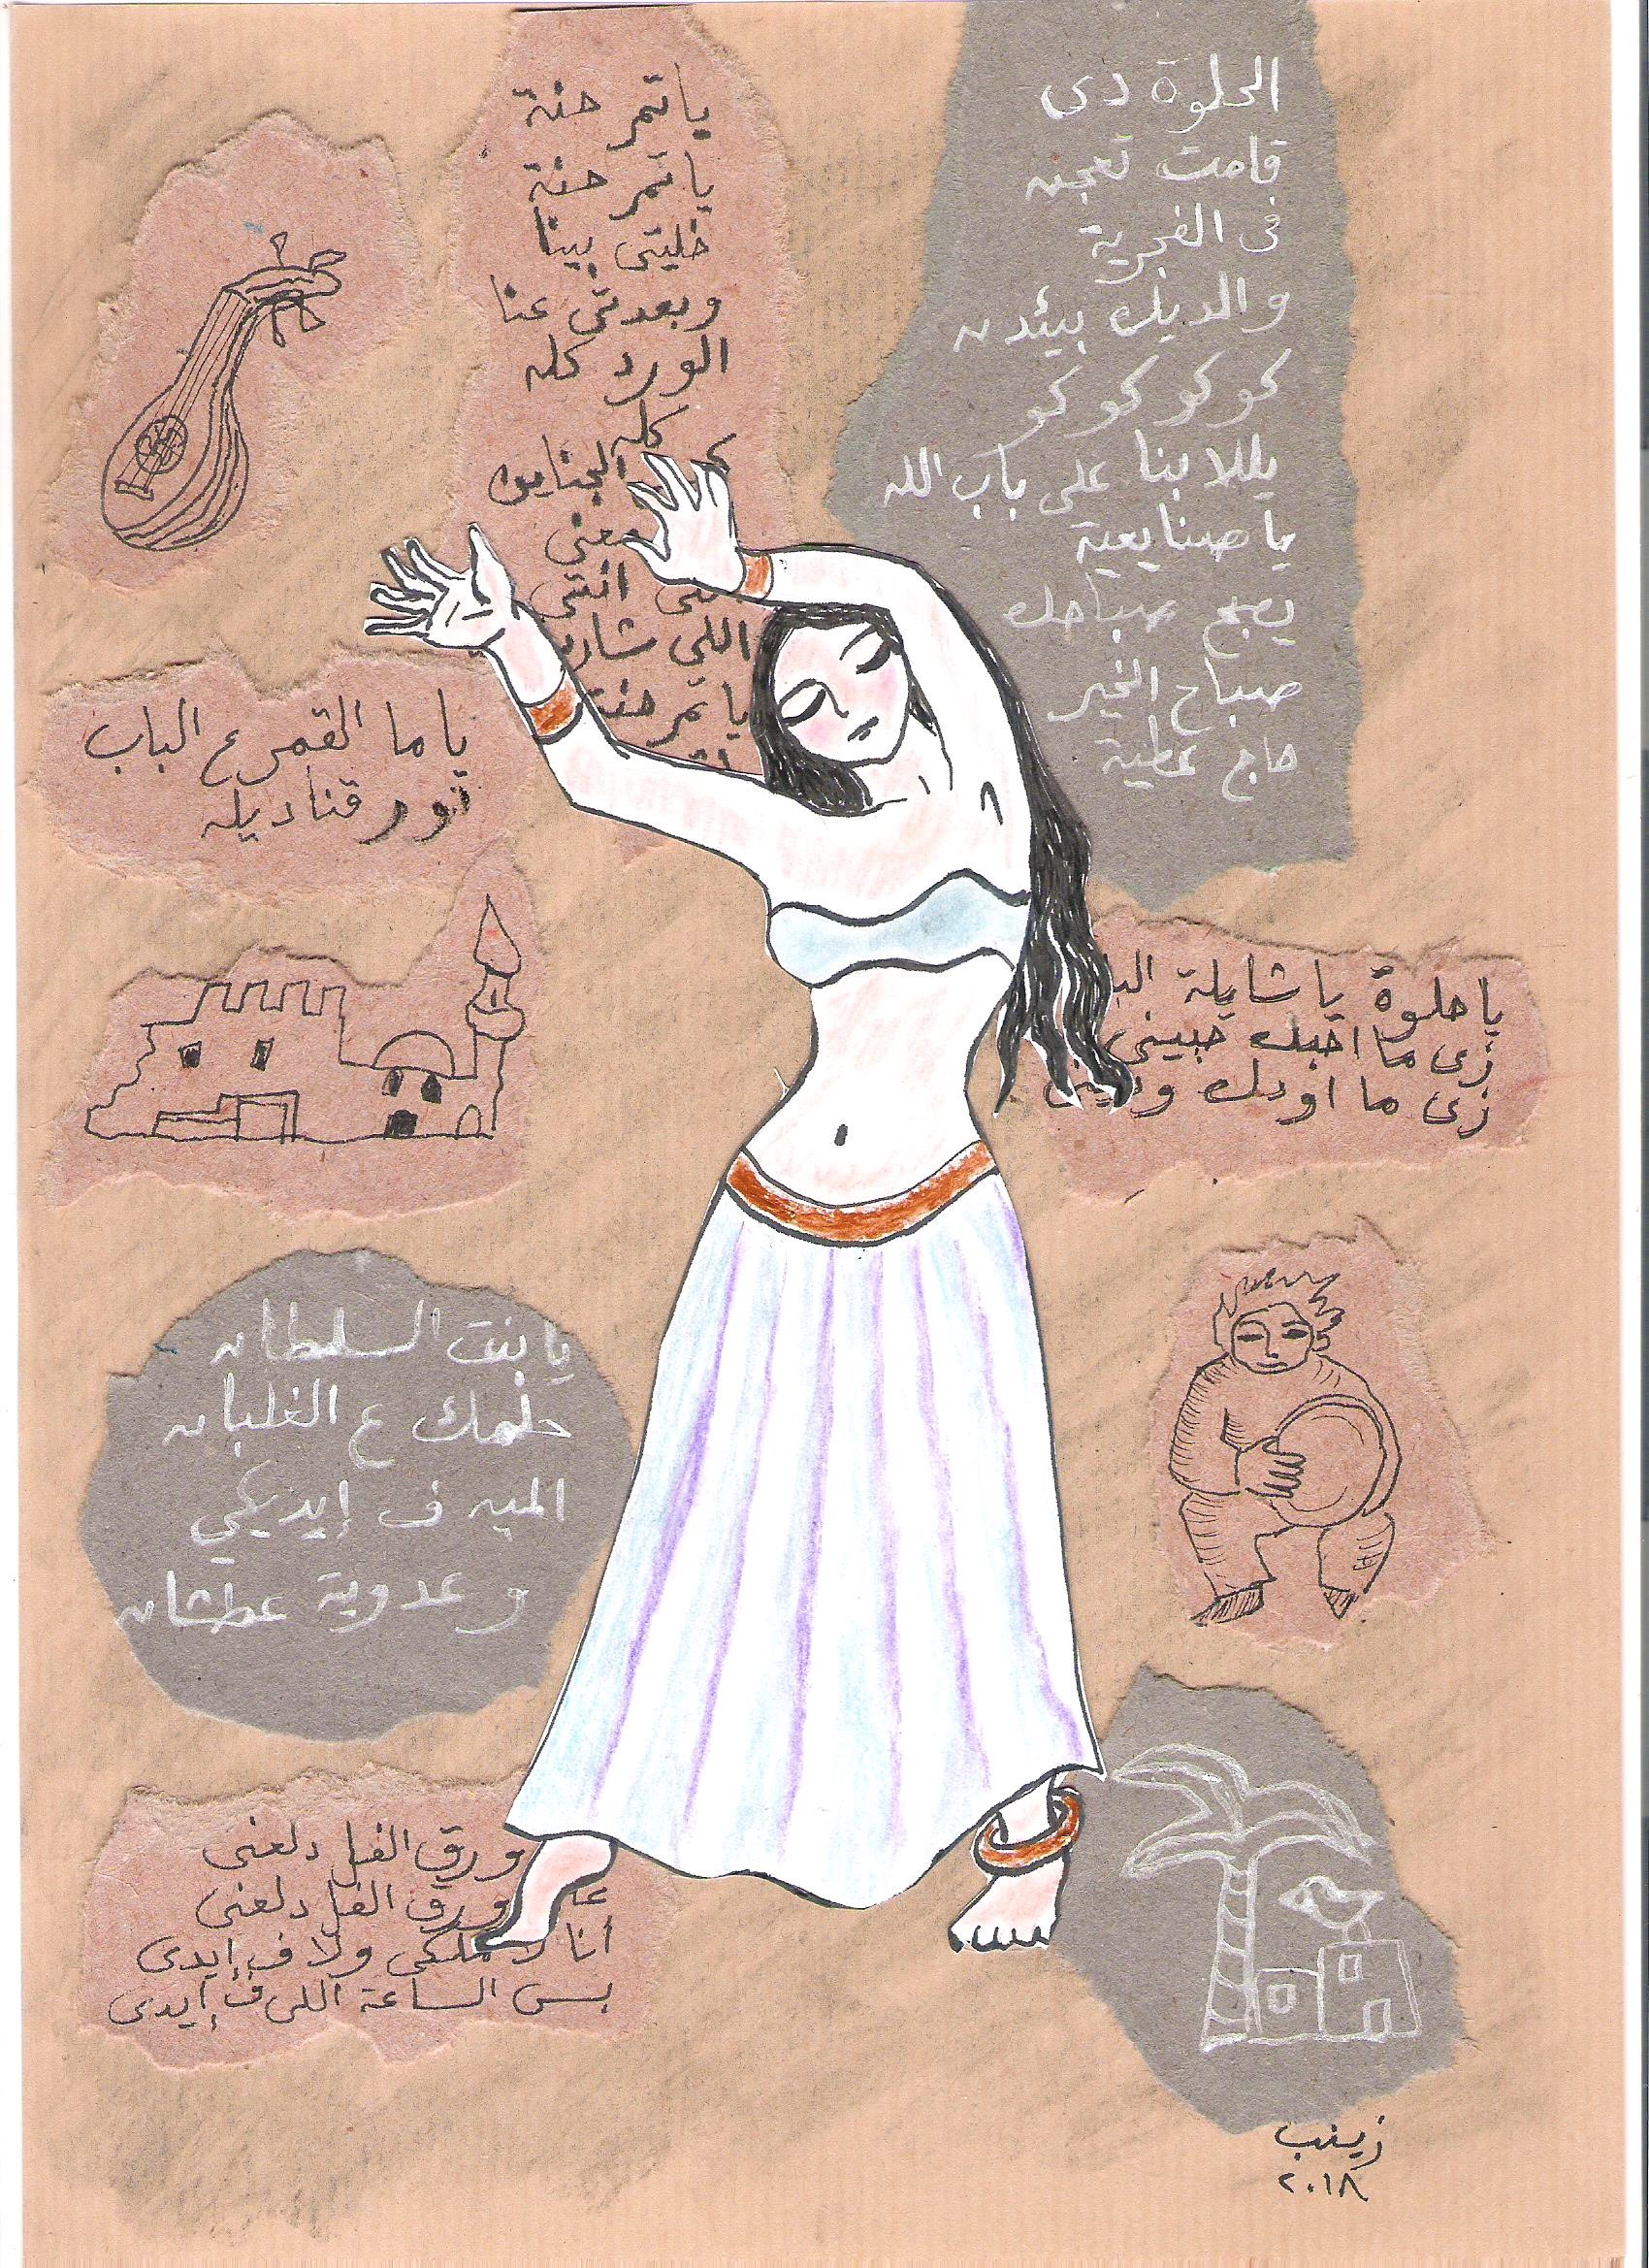 Chroniques Egyptiennes: la série de Zeinab. (1) – Version anglaise